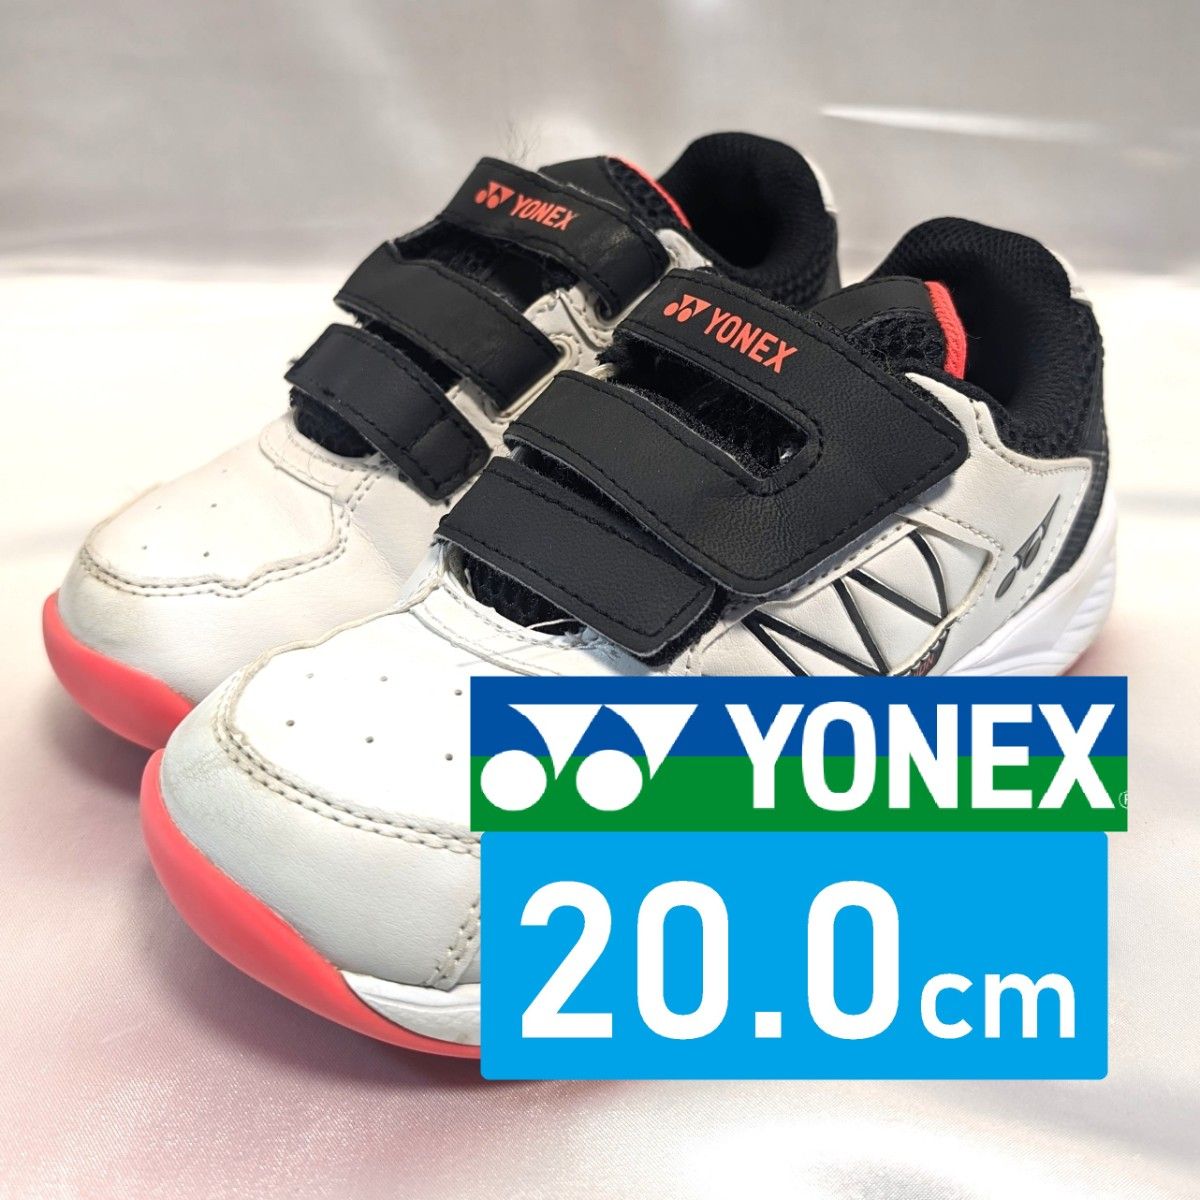 ■ ヨネックス YONEX テニスシューズ 20.0cm / 20cm インドアテニス 室内テニス カーペットコート用【キッズ】